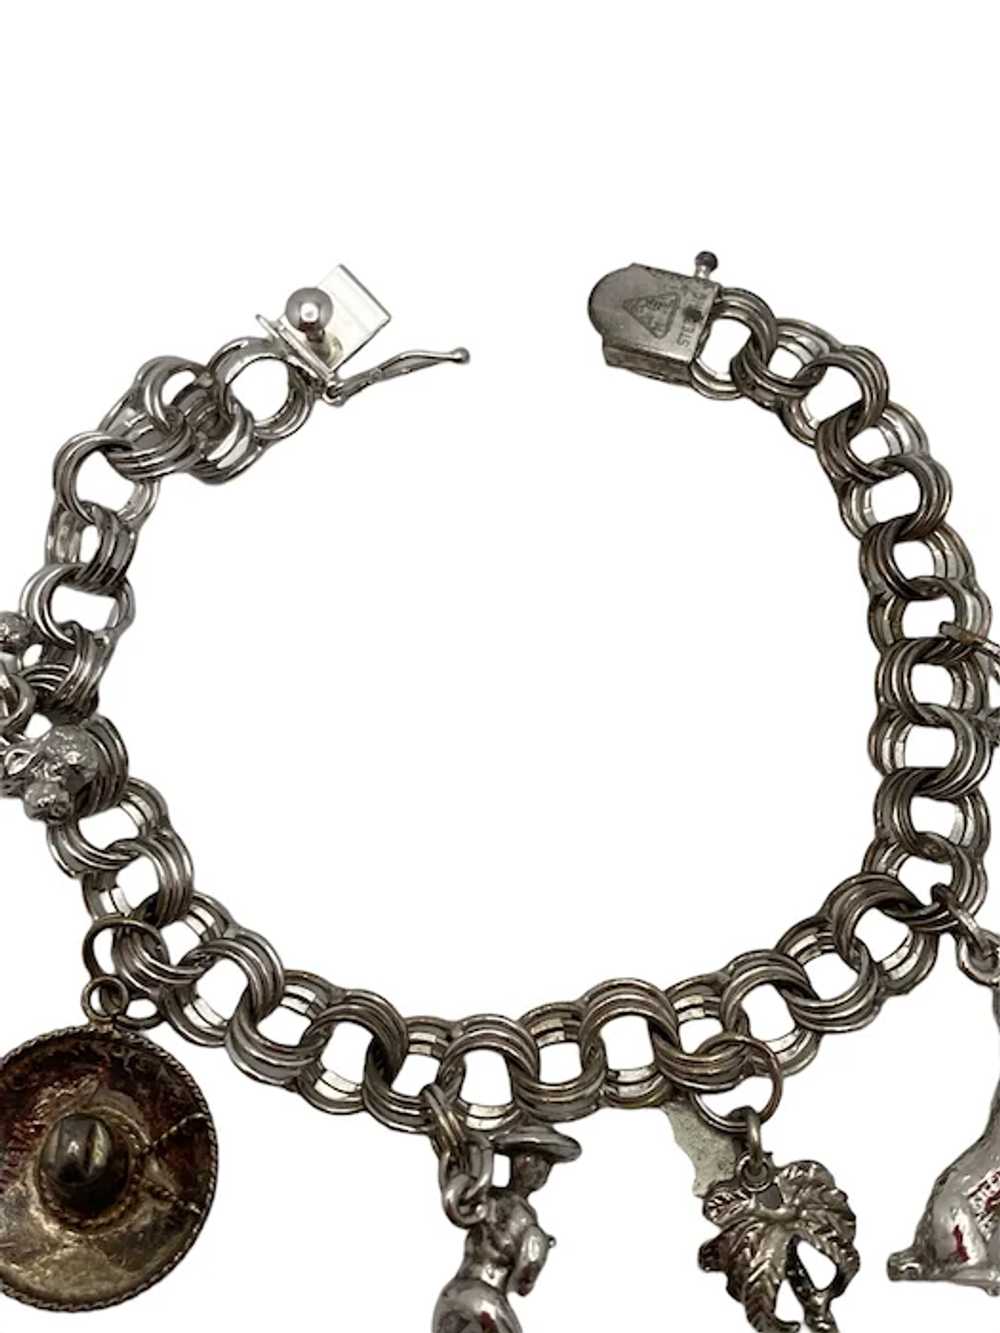 Vintage Sterling Silver Link Charm Bracelet - image 5